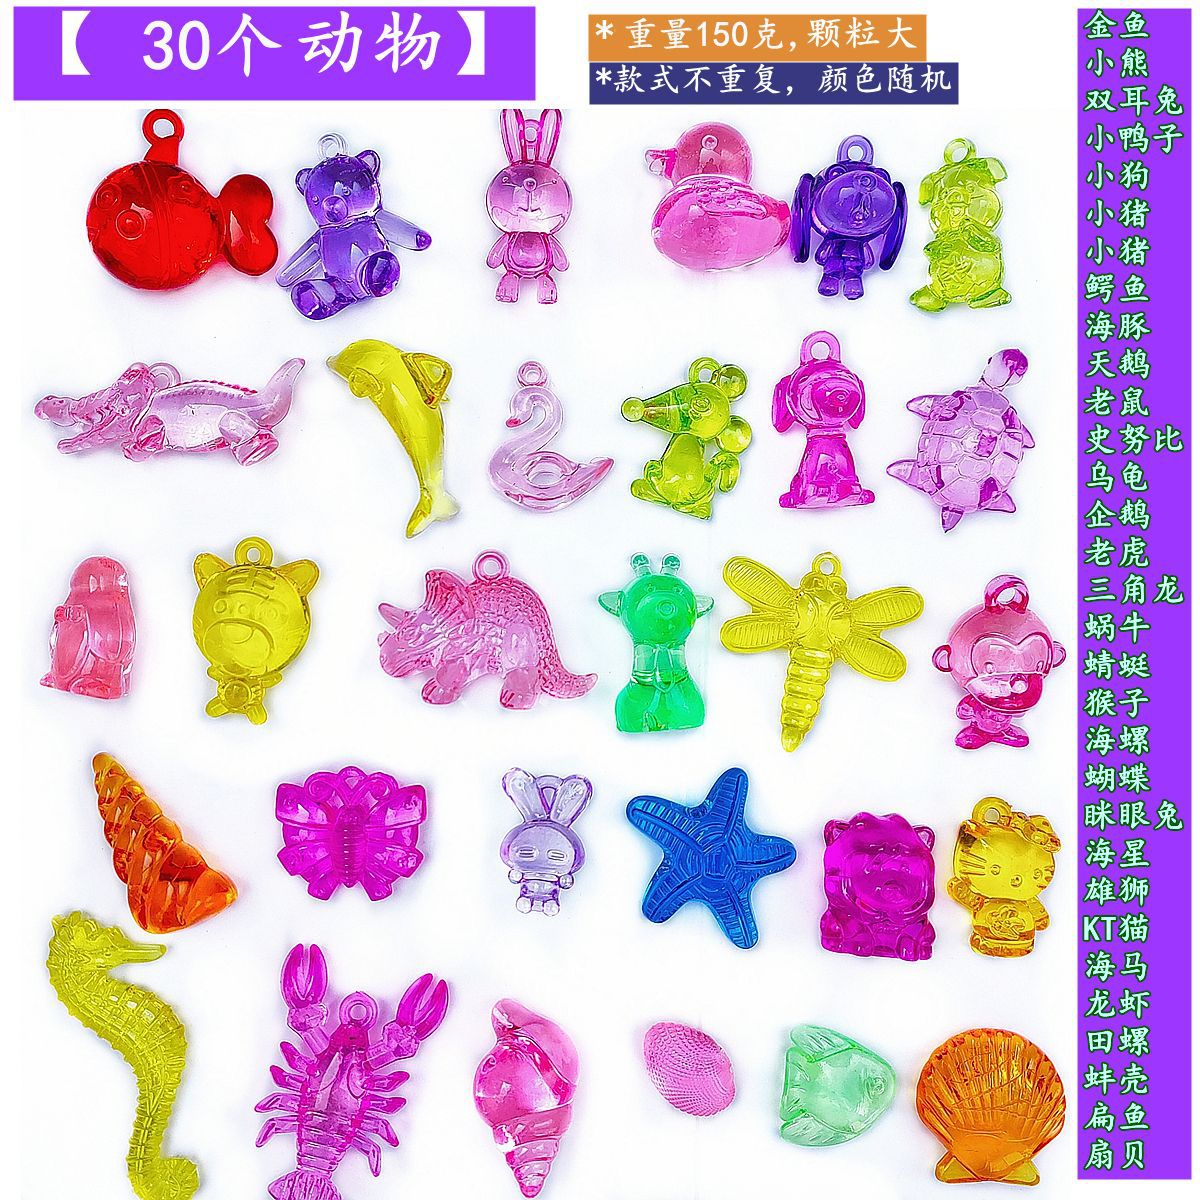 公主宝石玩具/儿童女孩玩具产品图